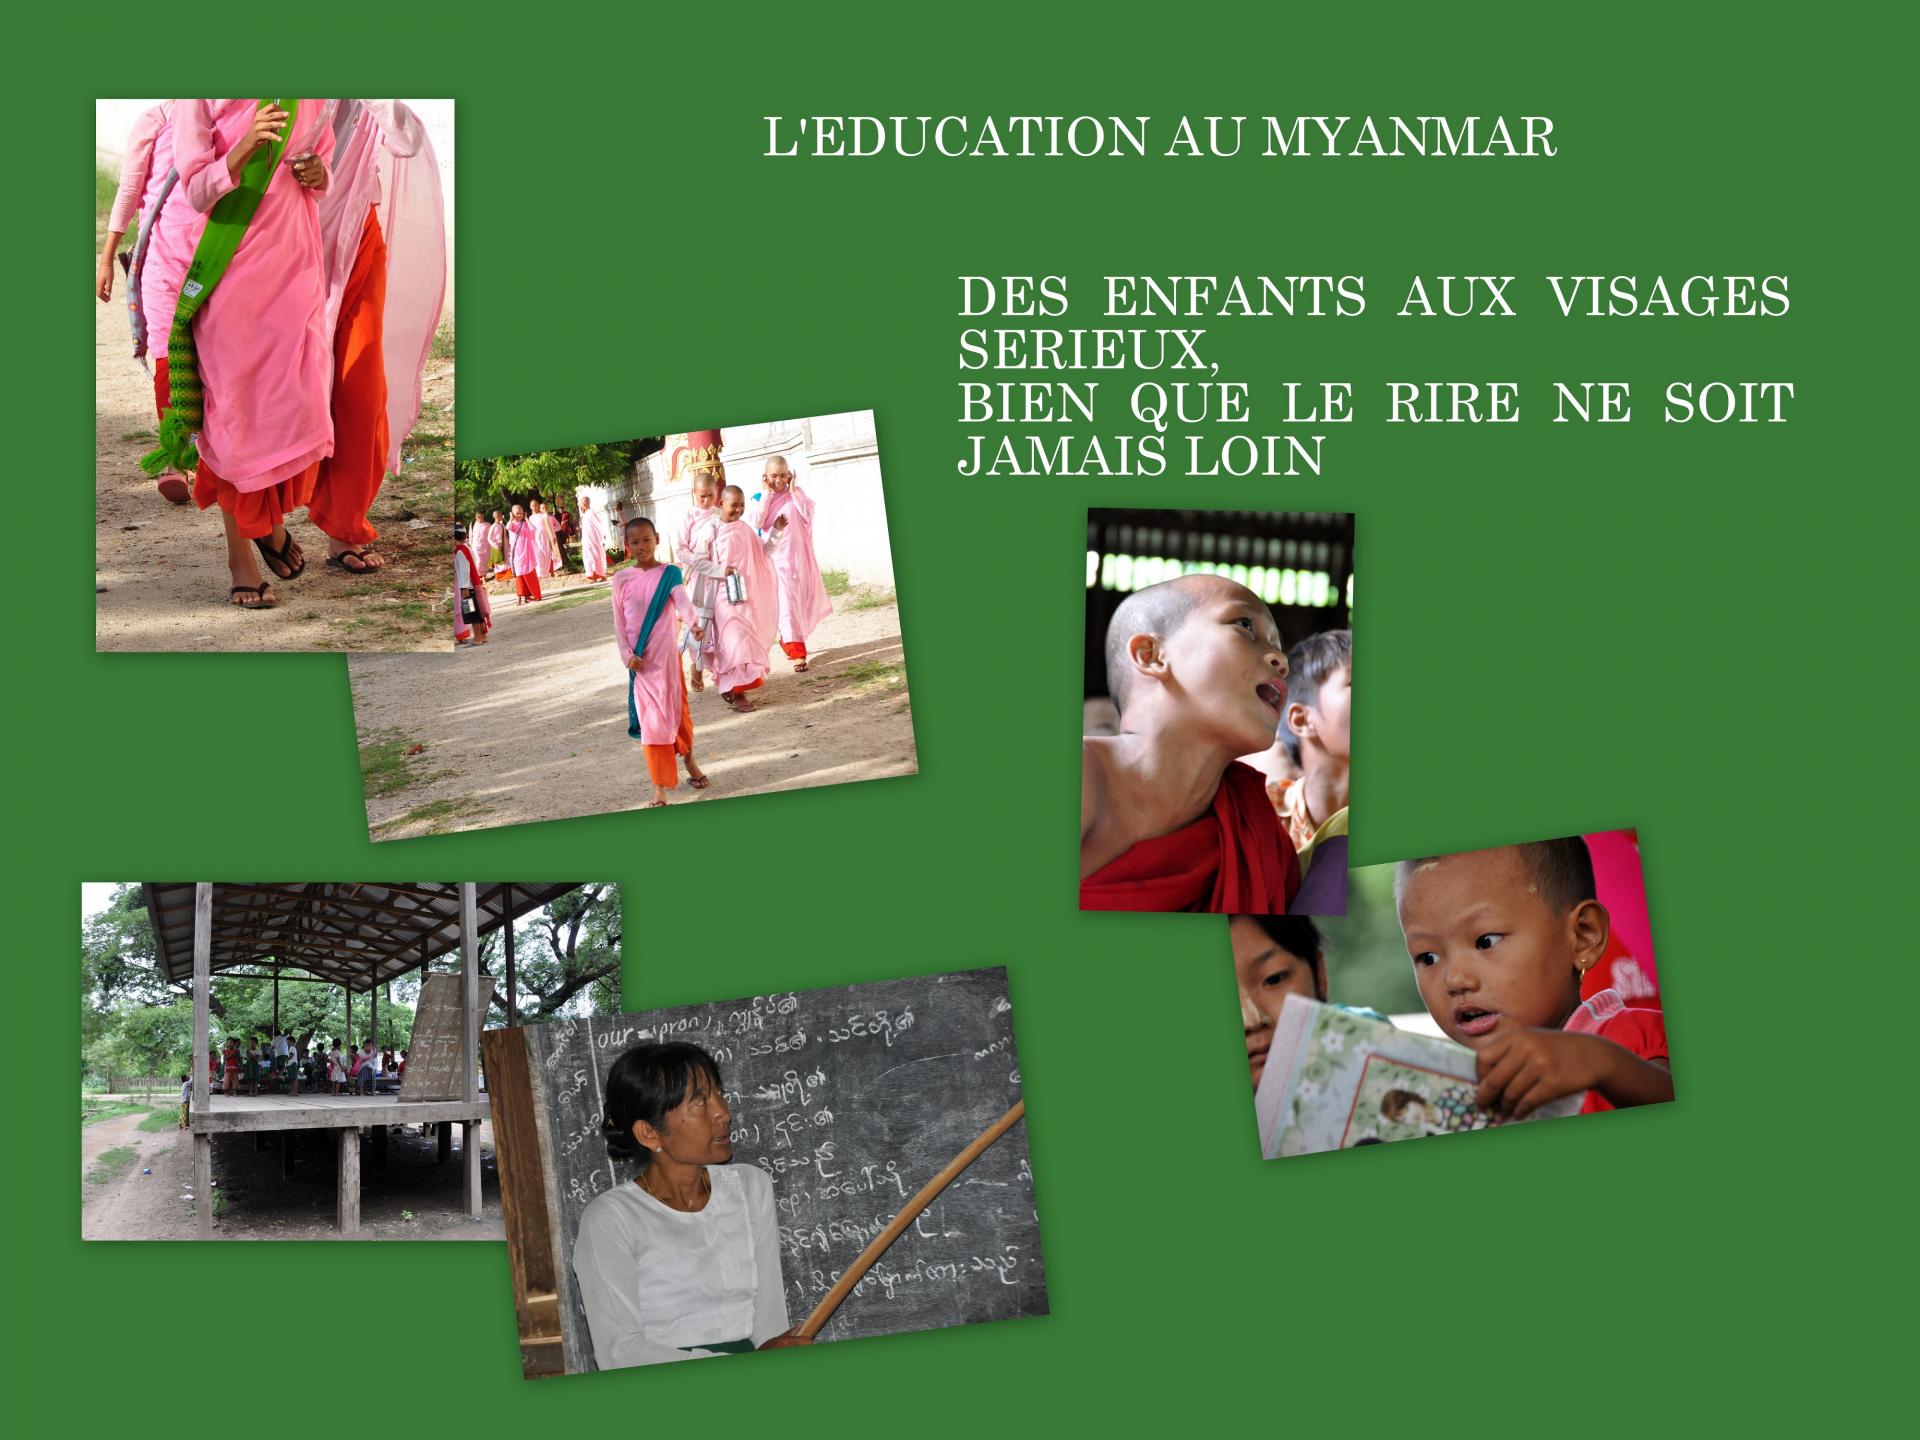 Birmanie 2012 presentation